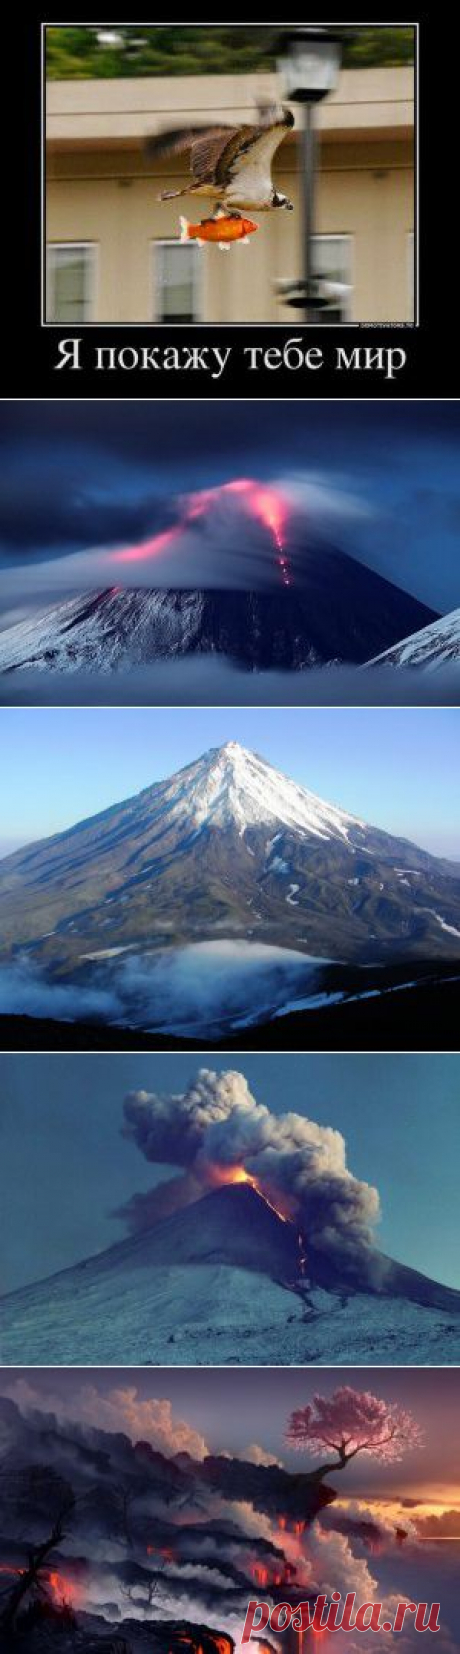 Впечатляющая мощь природы - фото вулканов | Алтарь Инитаксы